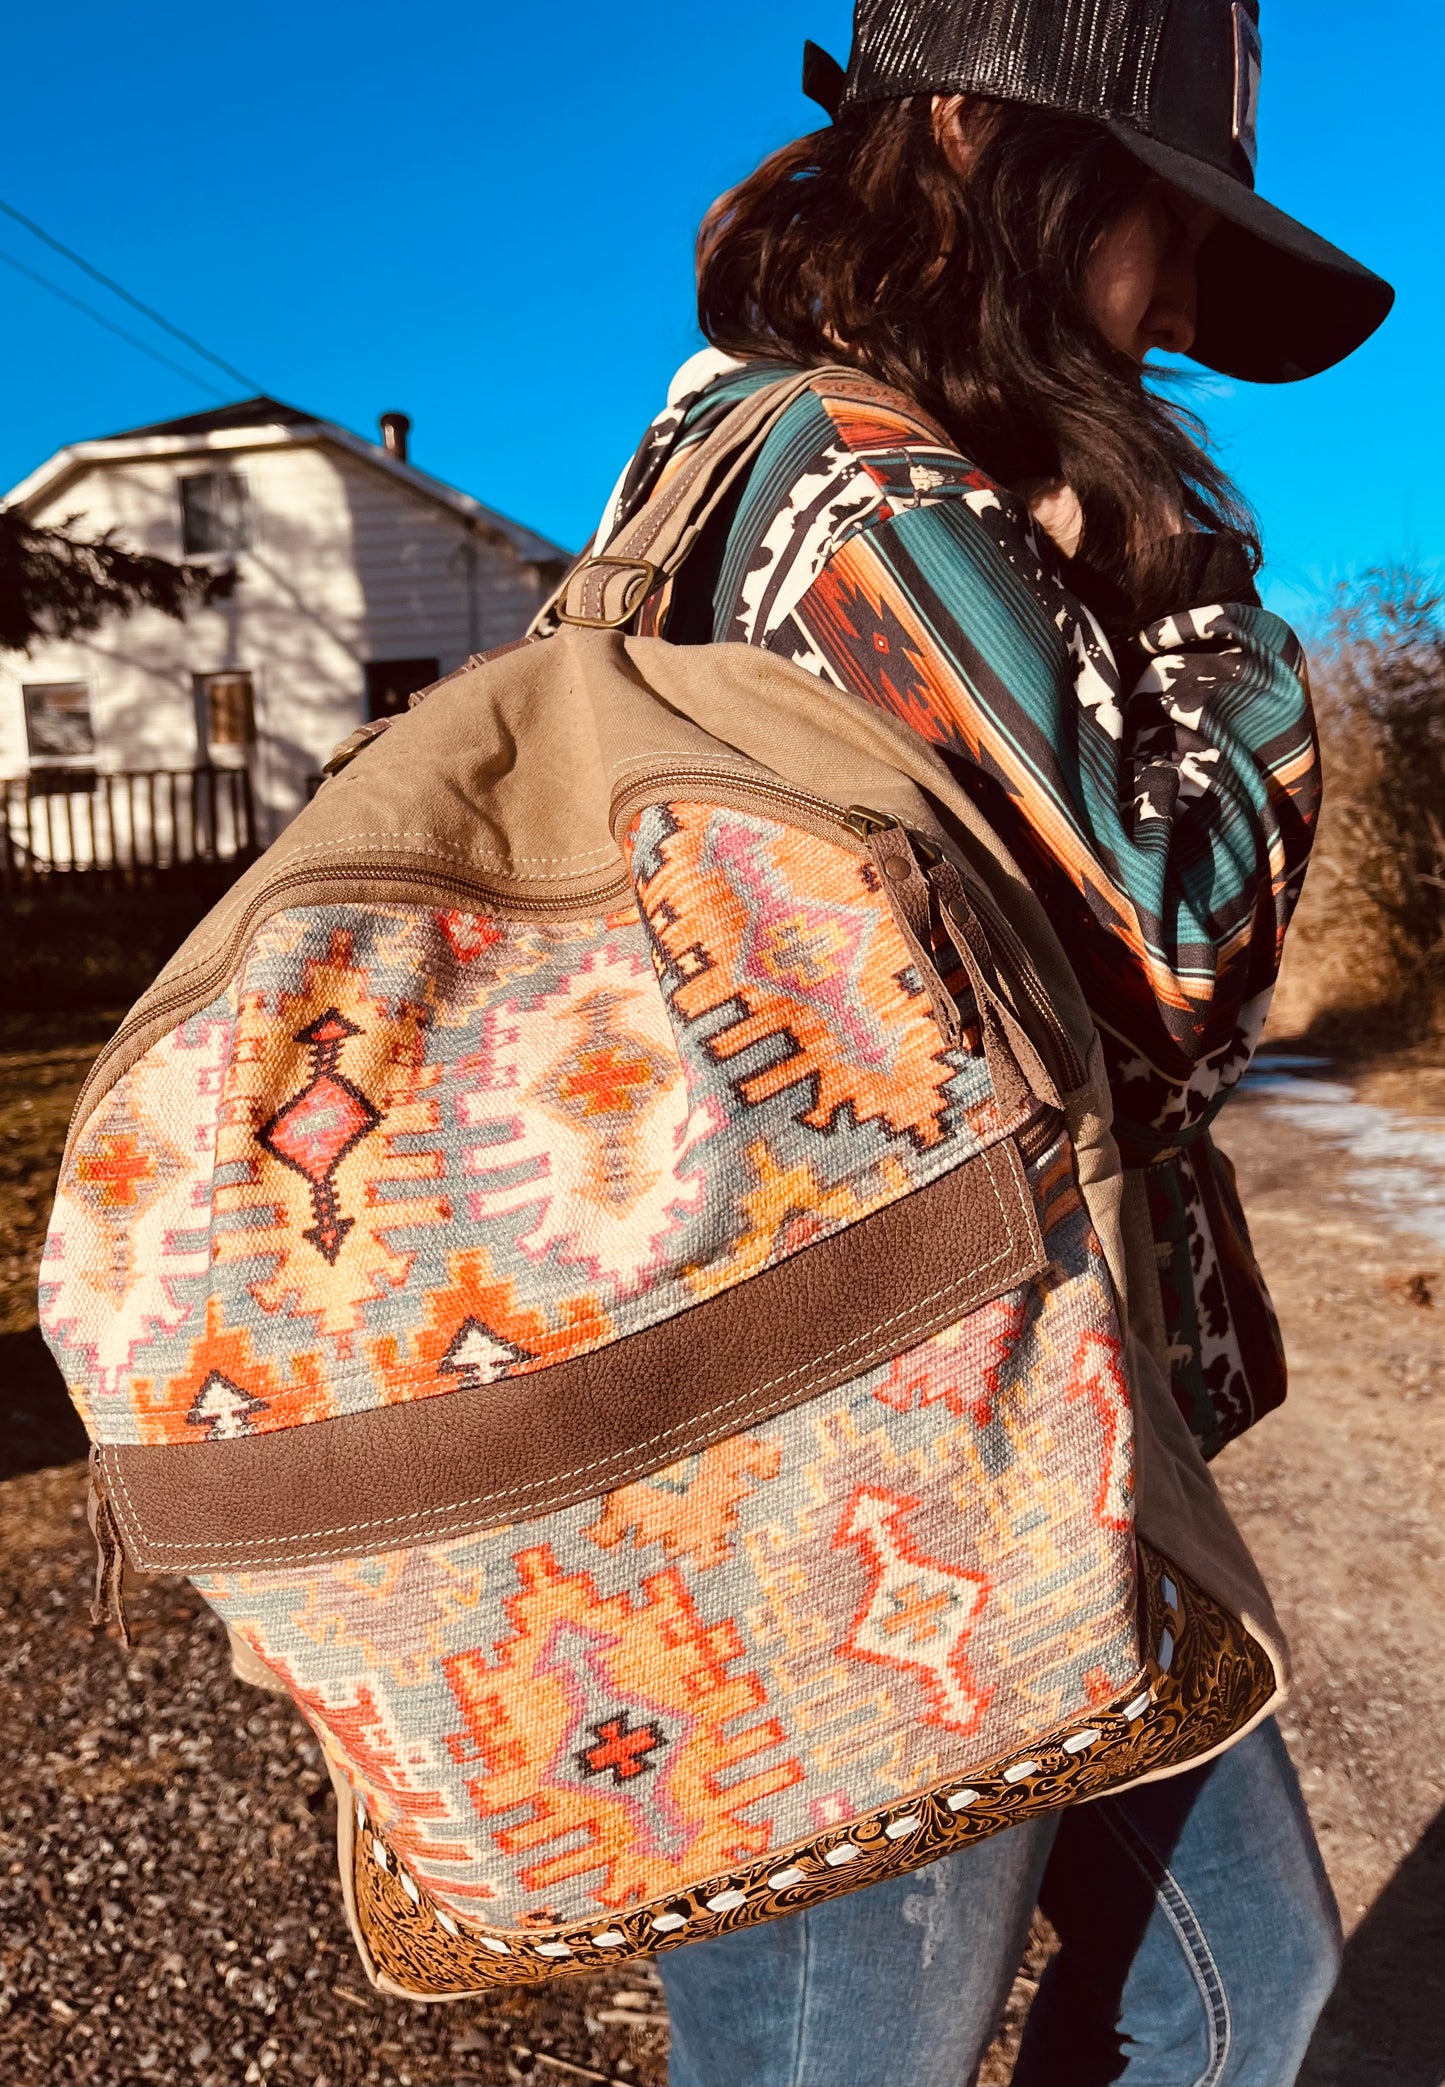 Southwestern style backpack